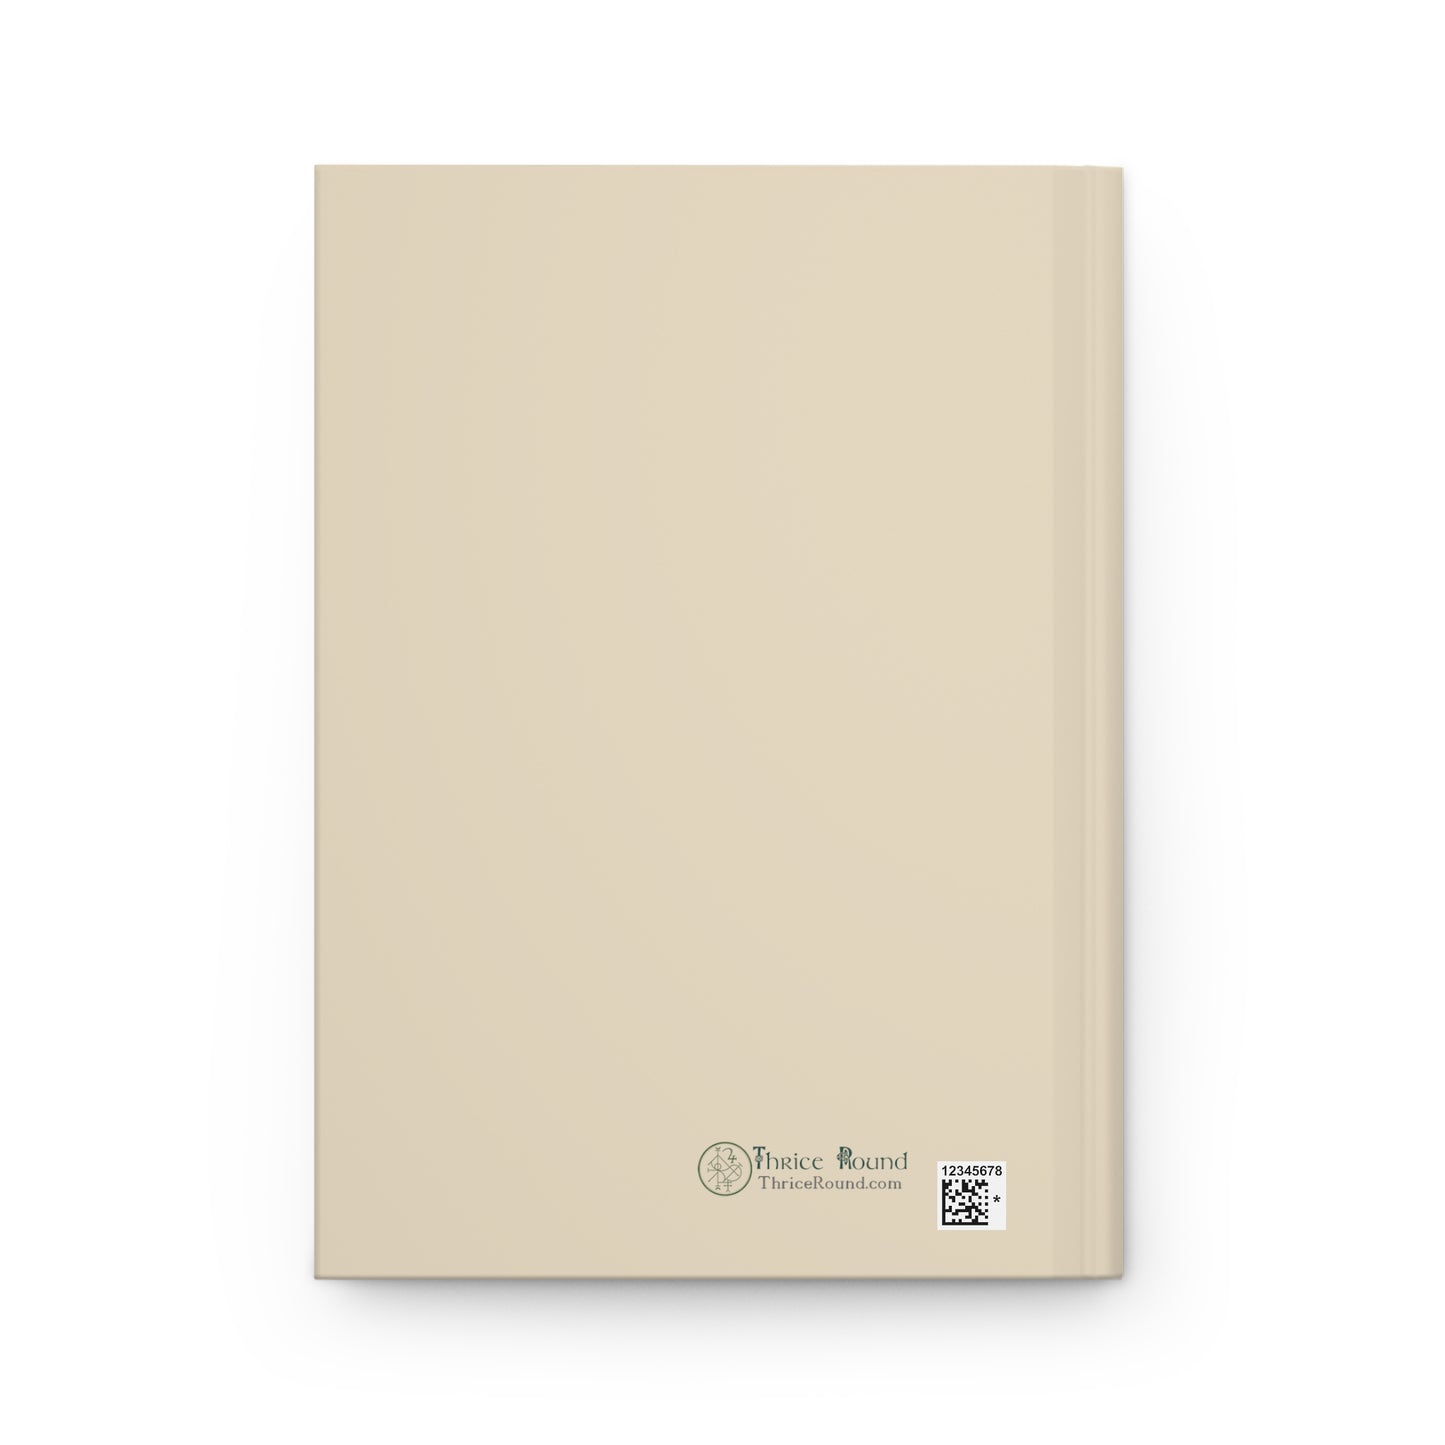 Judgement Tarot Hardcover Notebook | Tarot journal